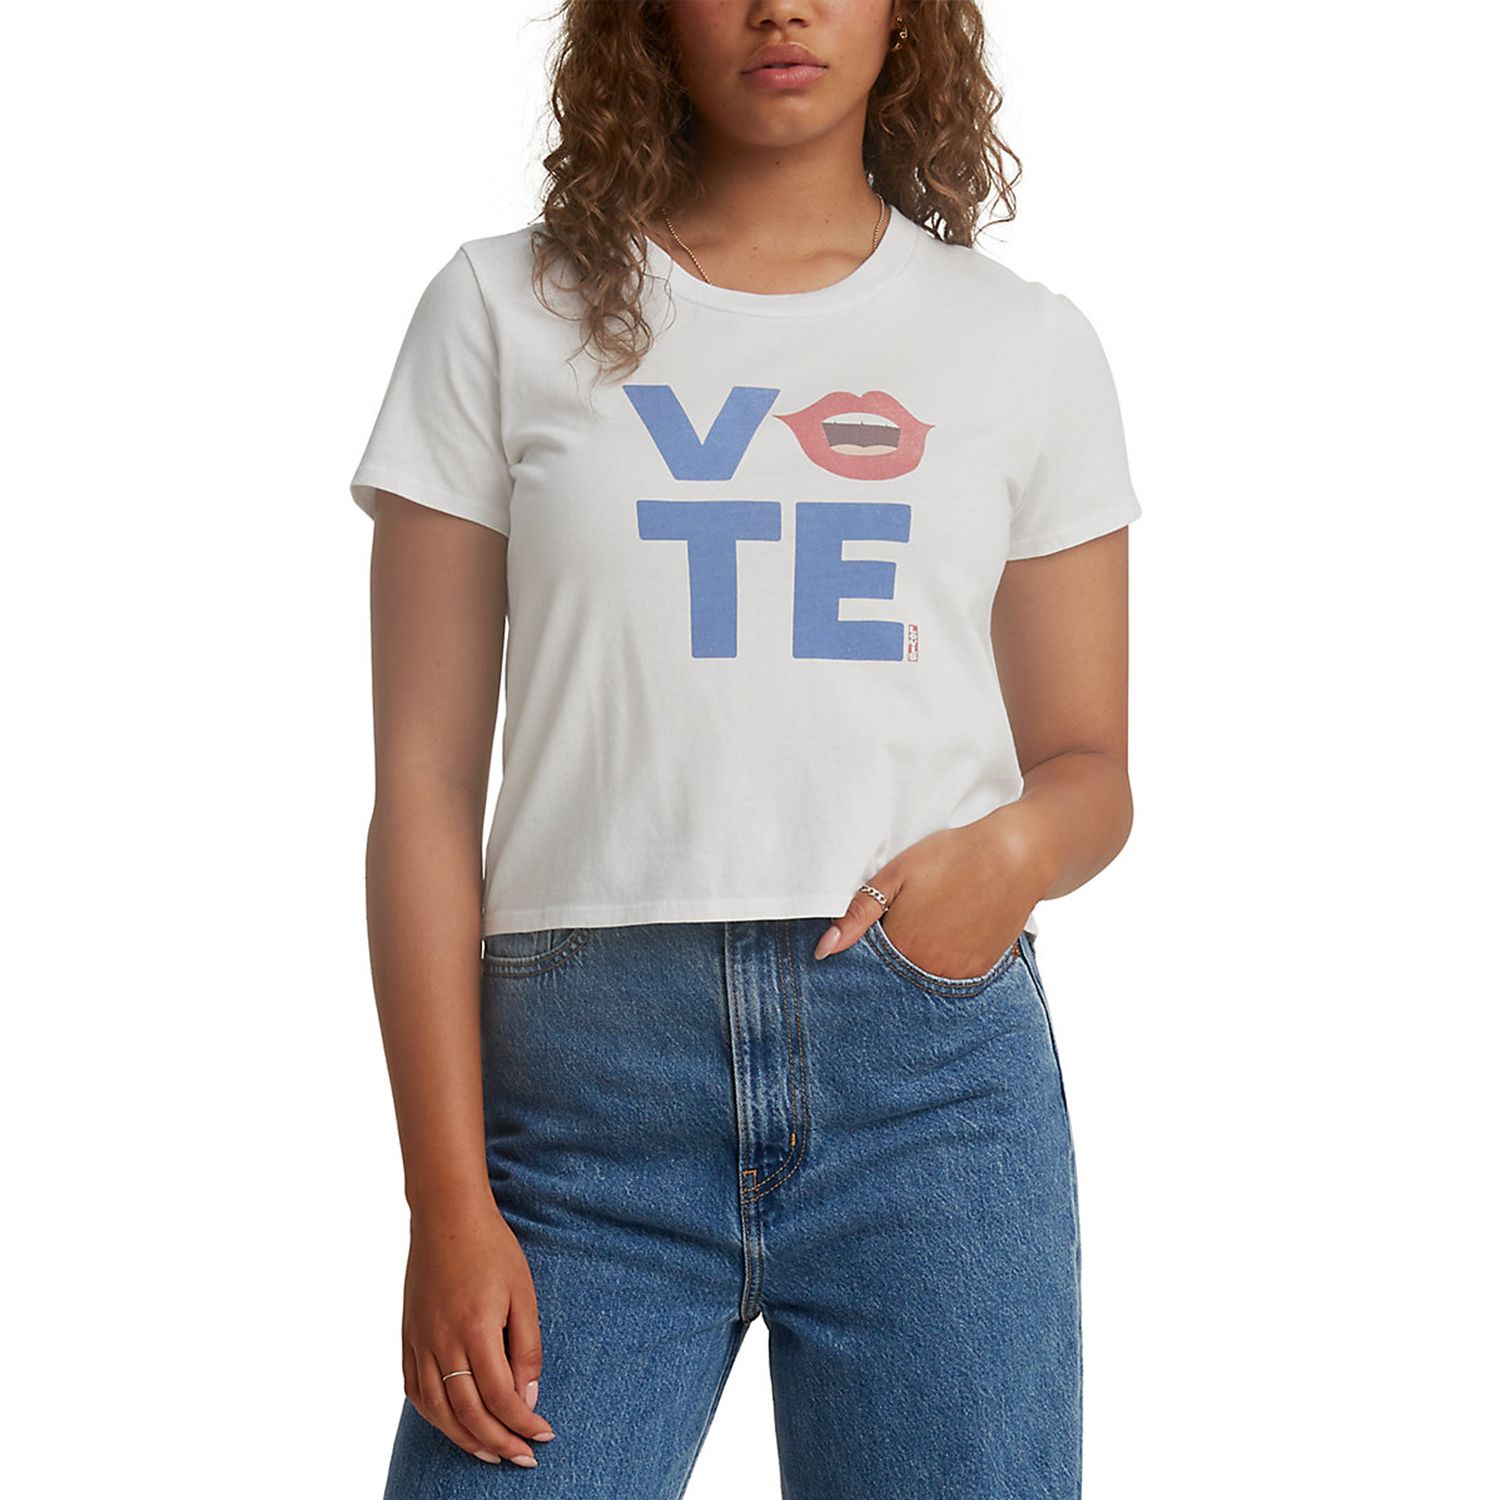 levi's vote shirt